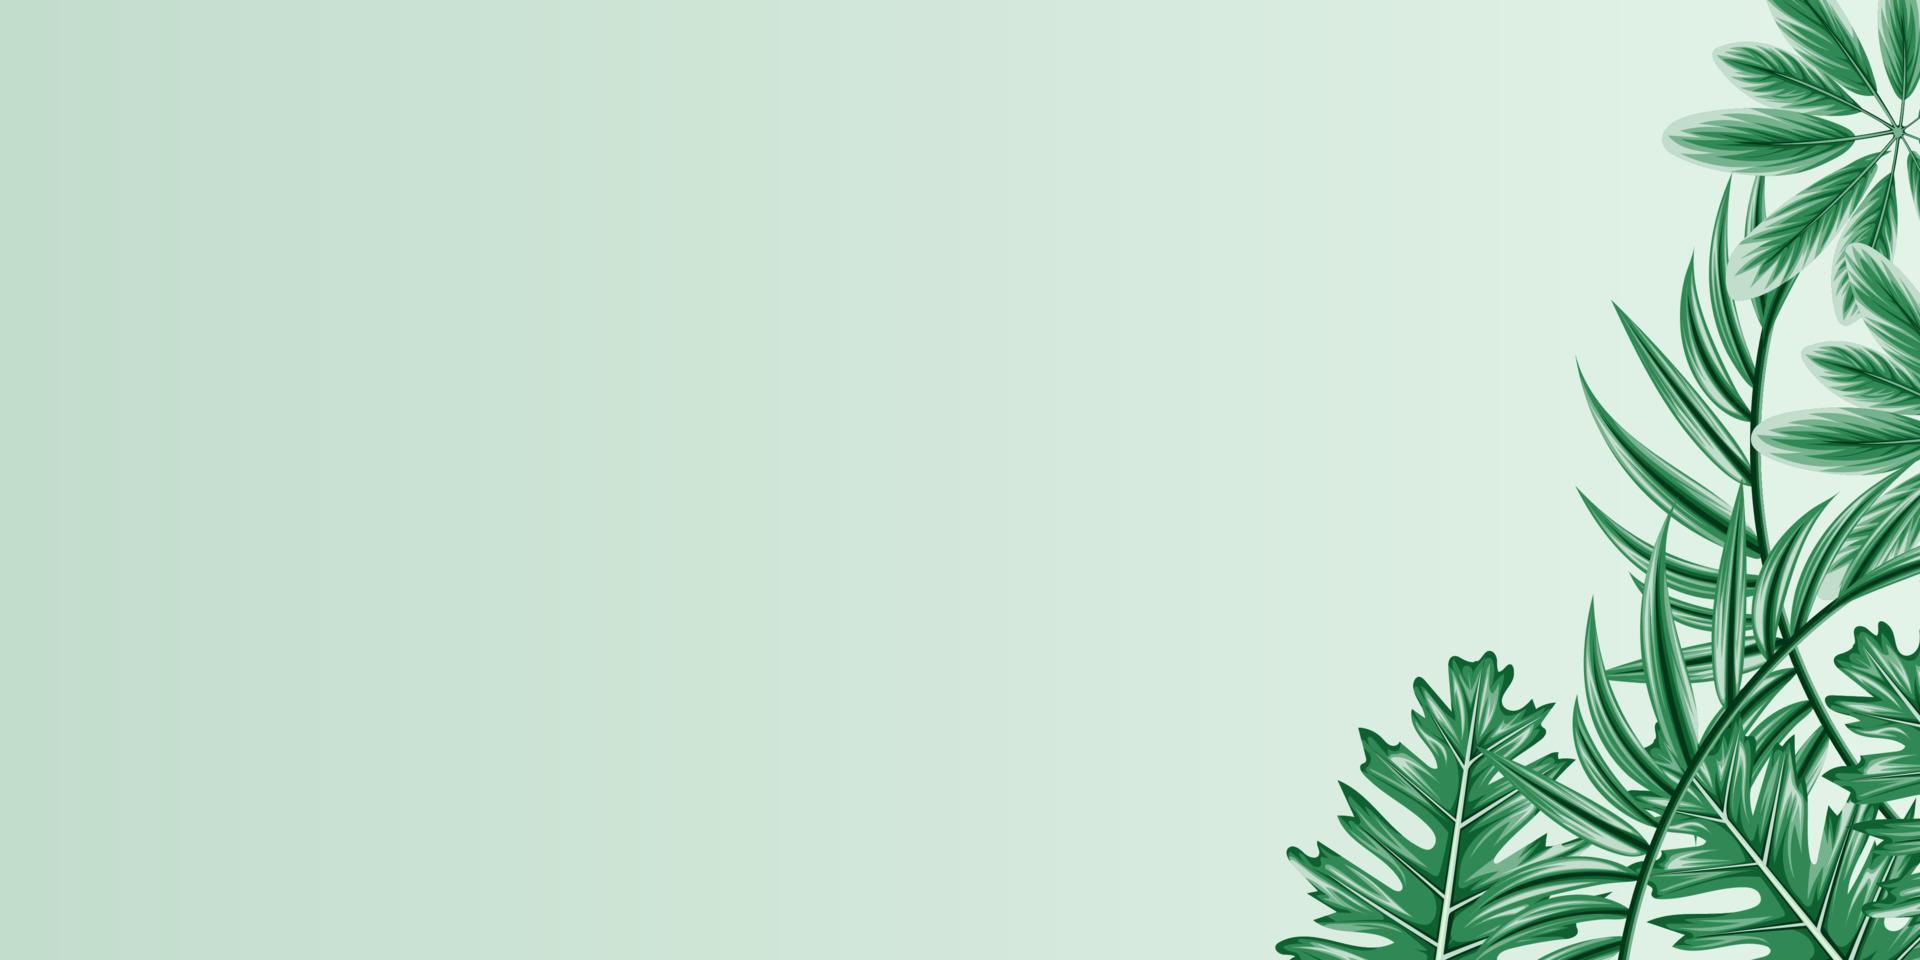 bannières de feuilles tropicales horizontales vectorielles sur fond blanc avec espace de copie. conception botanique exotique pour les cosmétiques, le spa, le parfum, les produits de santé, l'arôme, l'invitation de mariage. vecteur